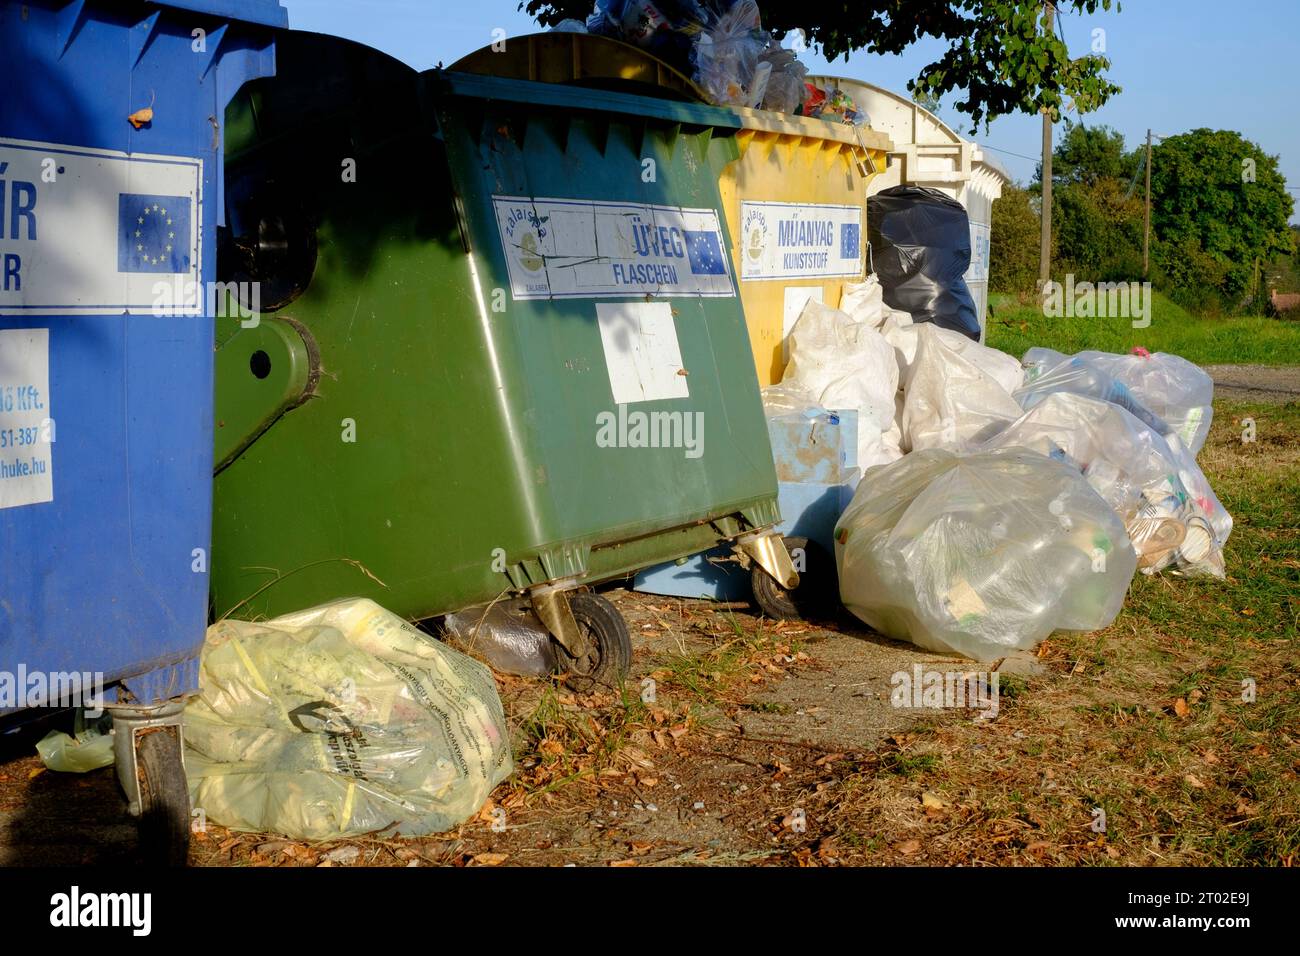 sacs débordants en plastique communauté rurale village de recyclage bacs en attente de collecte vidant recyclage comté de zala hongrie Banque D'Images